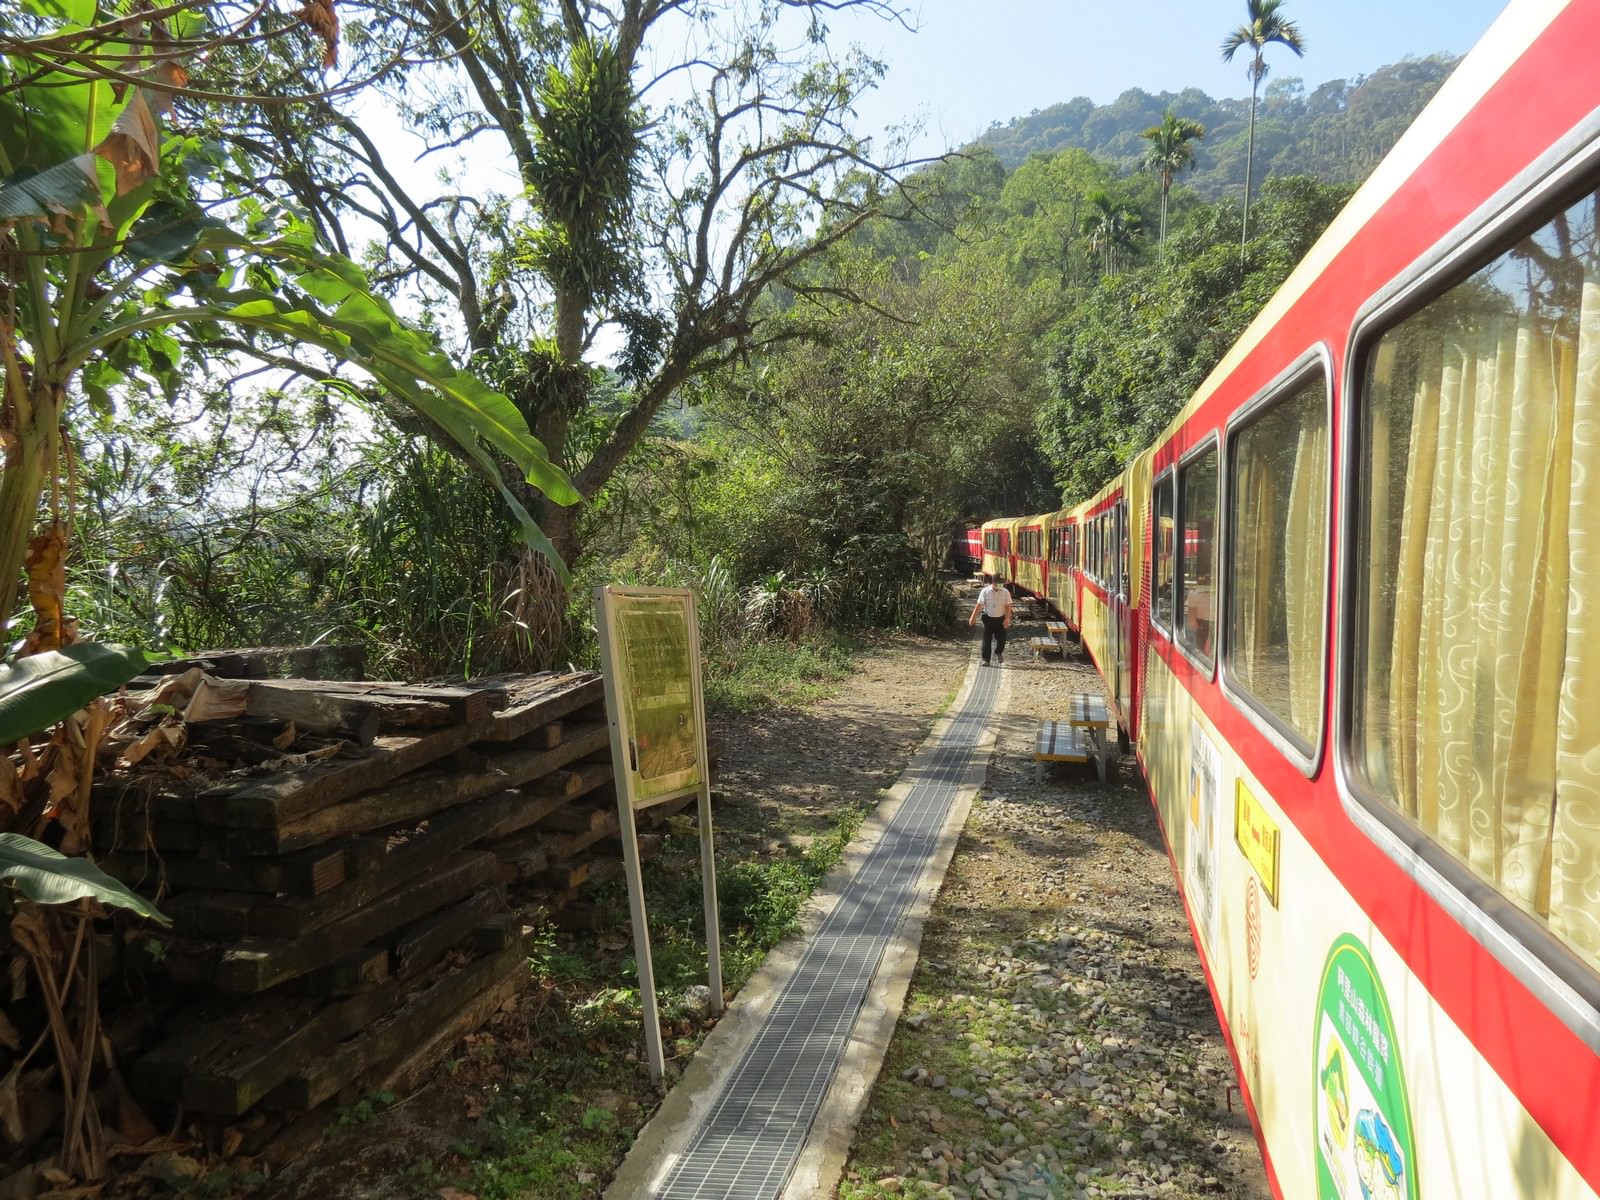 阿里山林業鐵路(森林小火車), 沿途風景